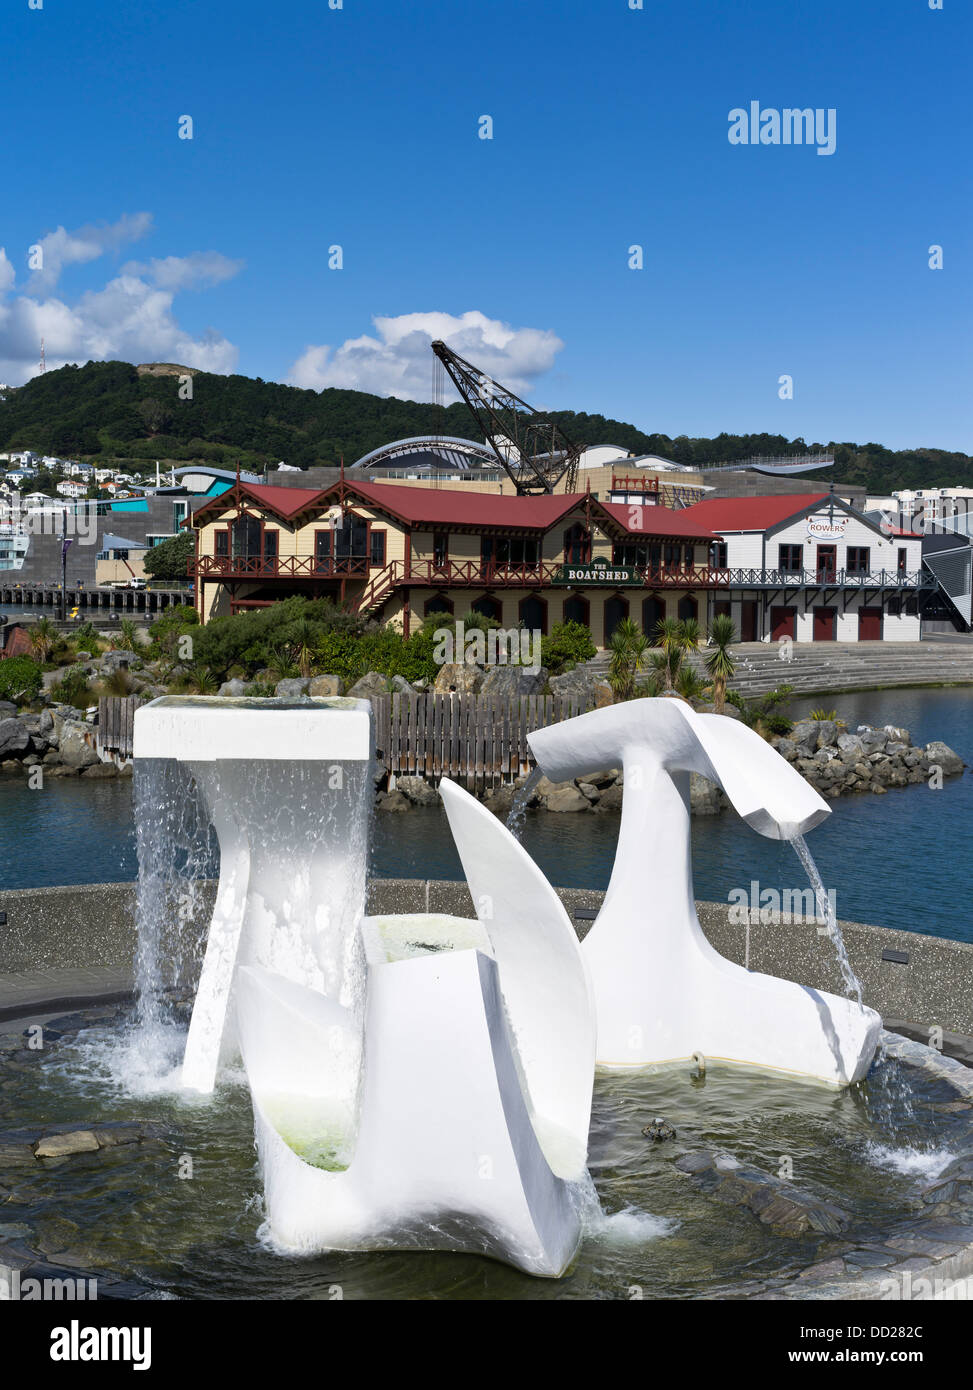 dh Lambton sculpture extérieure WELLINGTON HARBOUR NOUVELLE-ZÉLANDE NZ Modern Art fontaine sculptures Albatross Star Boating Club Boatshed Banque D'Images